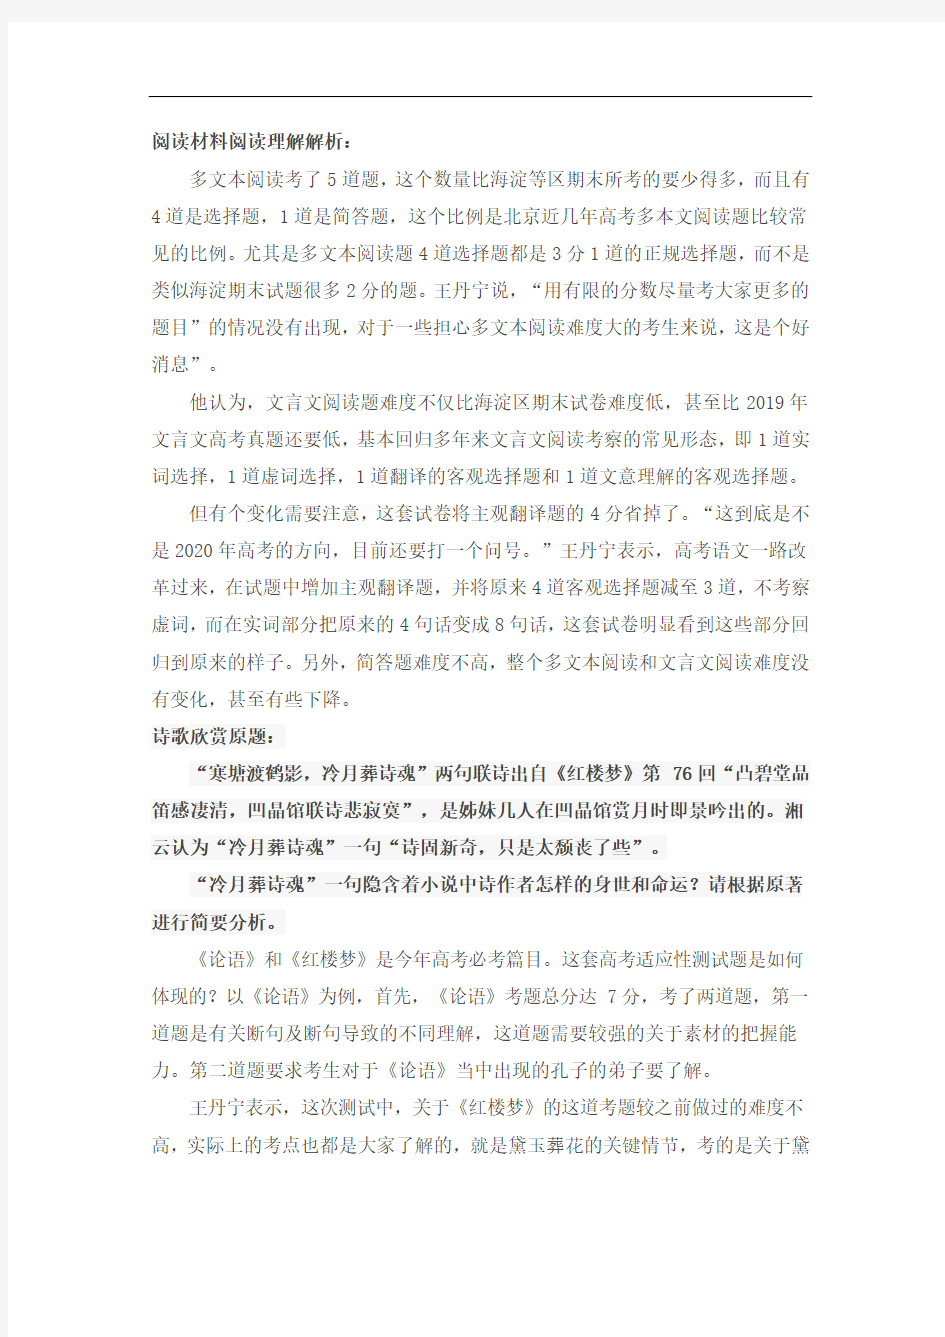 语文解析1 2020年北京市新高考适应性考试